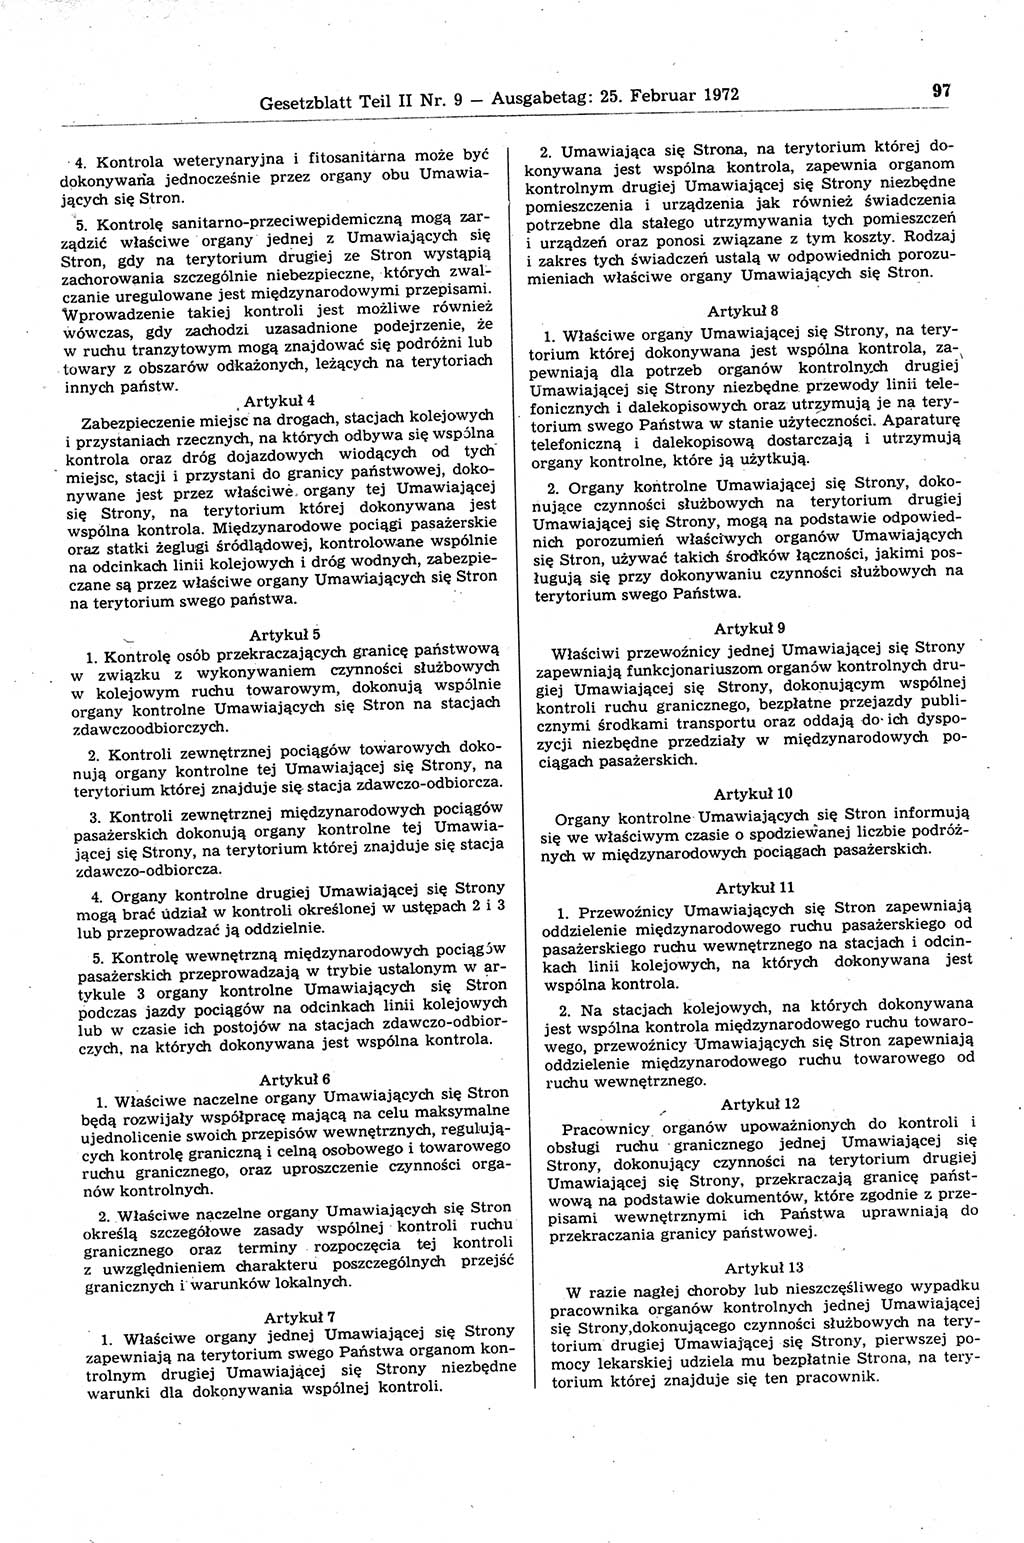 Gesetzblatt (GBl.) der Deutschen Demokratischen Republik (DDR) Teil ⅠⅠ 1972, Seite 97 (GBl. DDR ⅠⅠ 1972, S. 97)